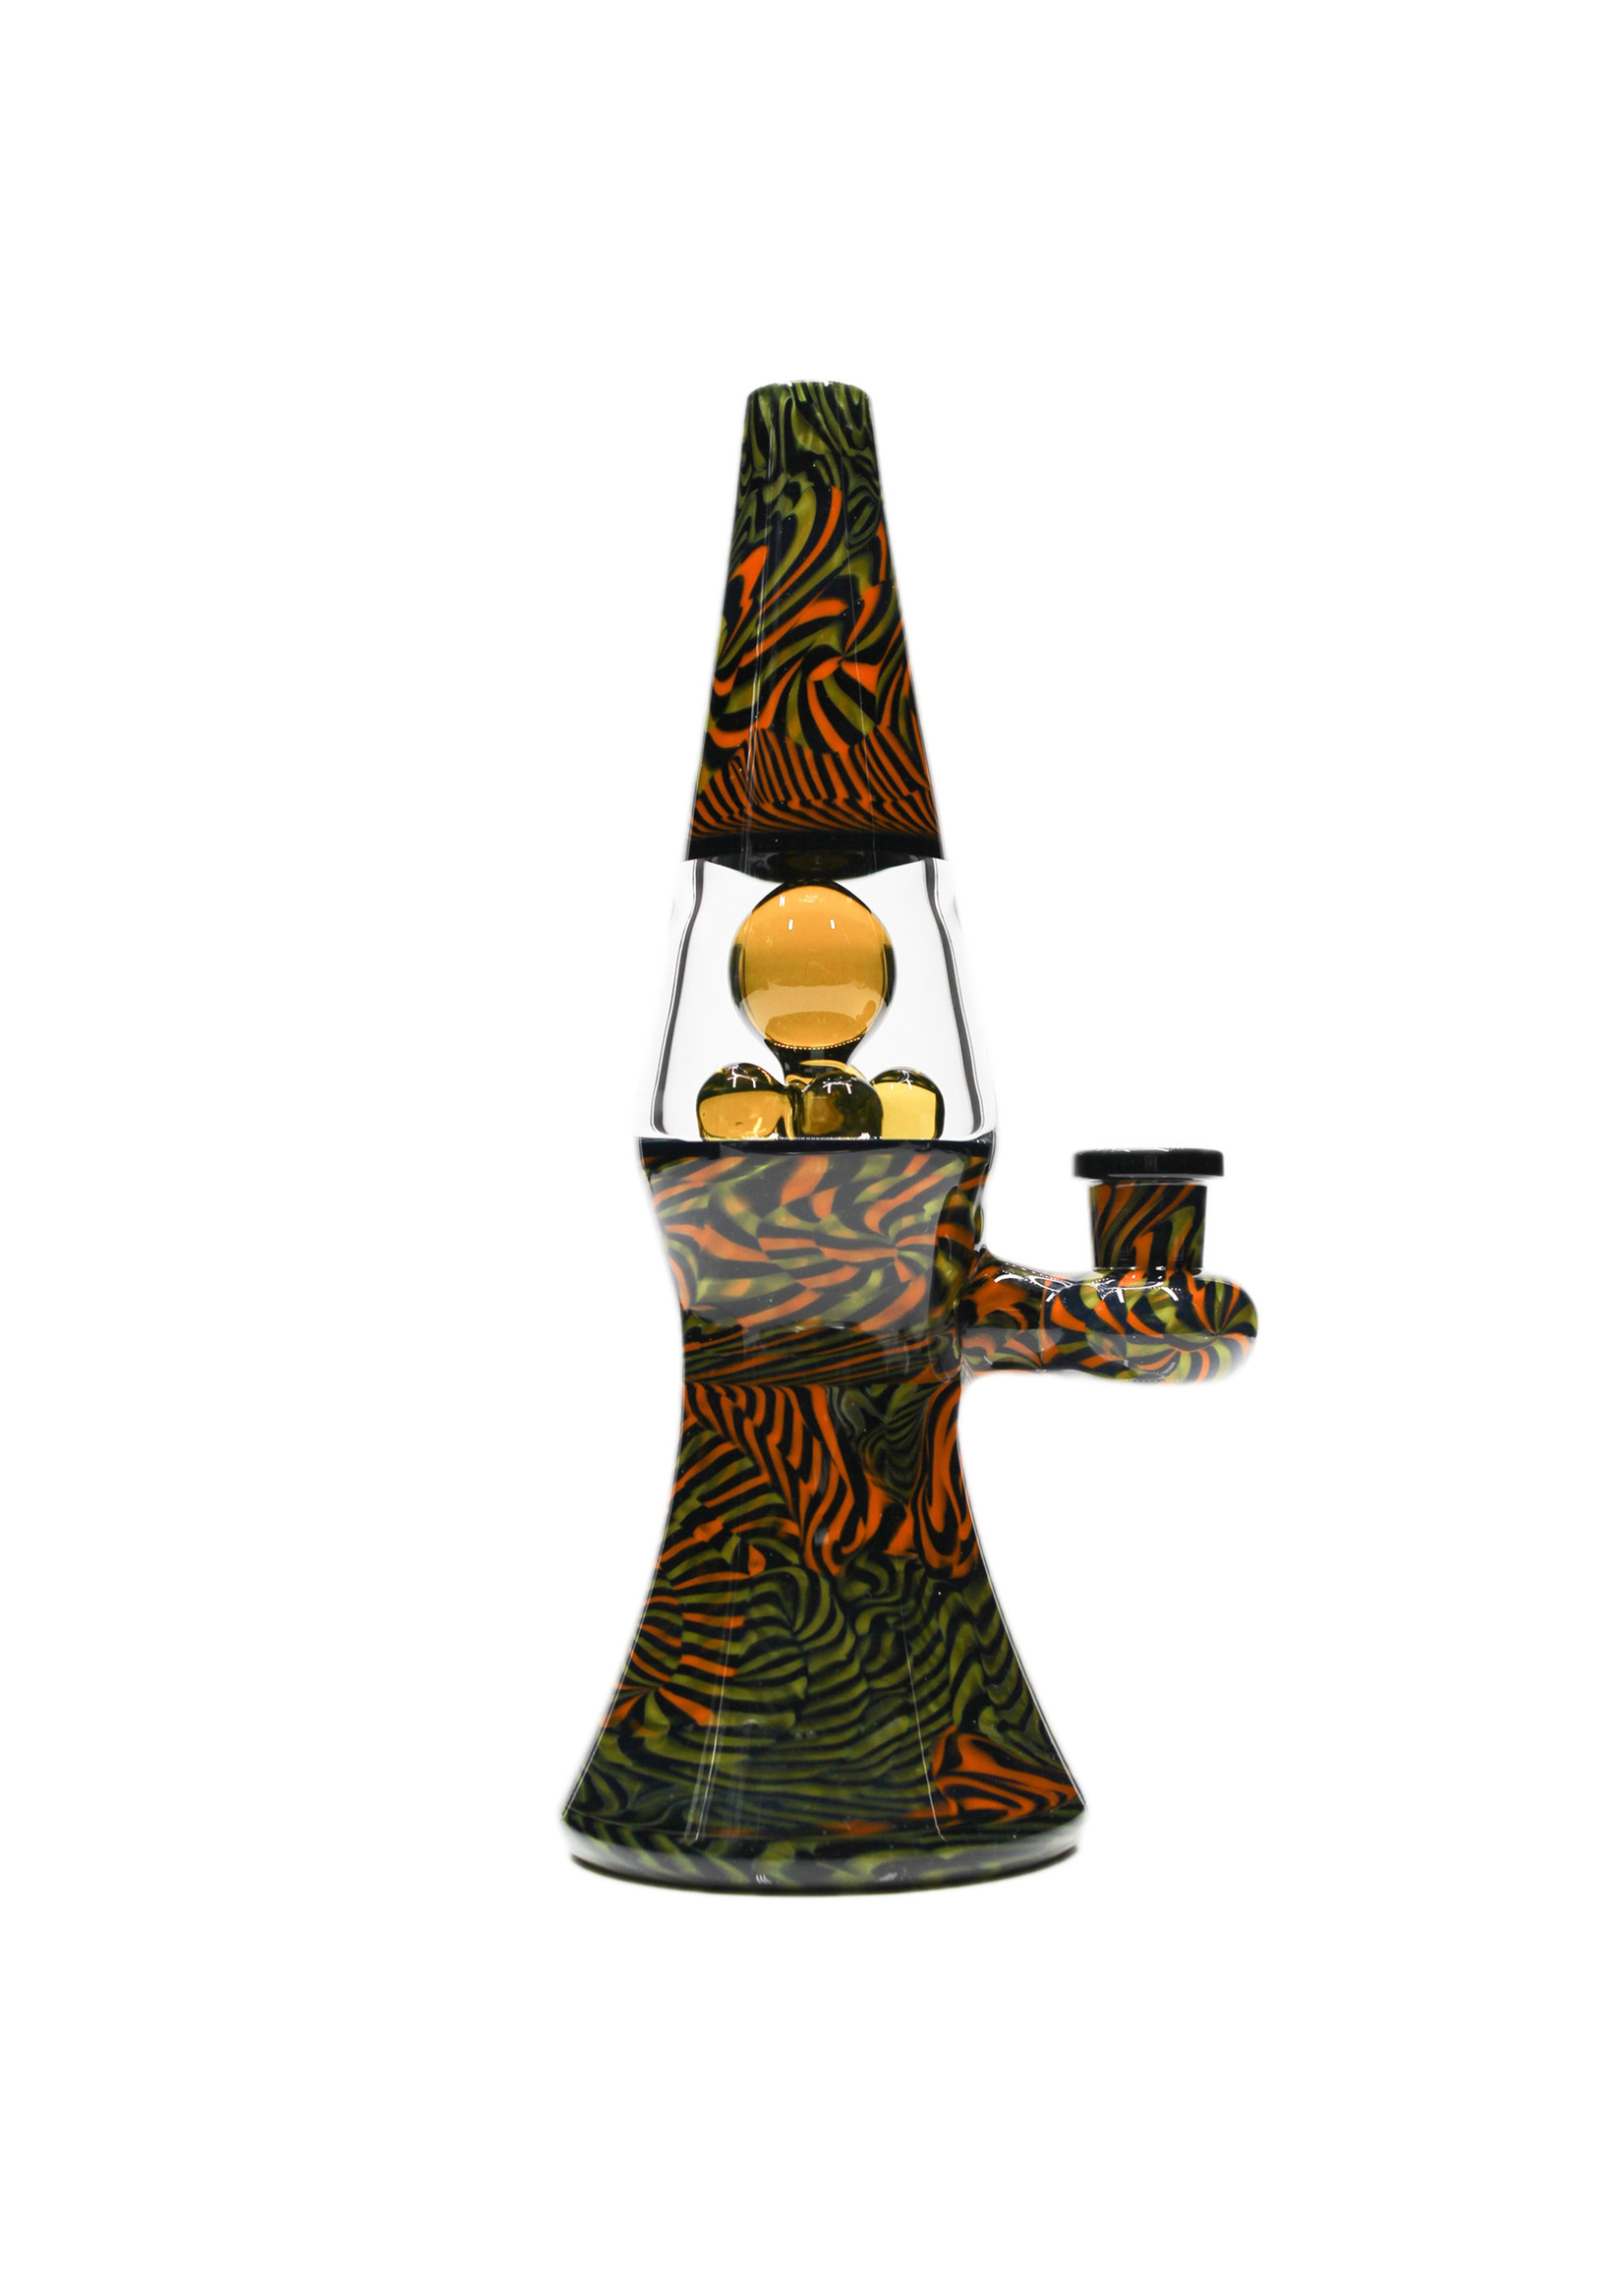 Bluegrass Glass Bluegrass Full Color Lamp #2